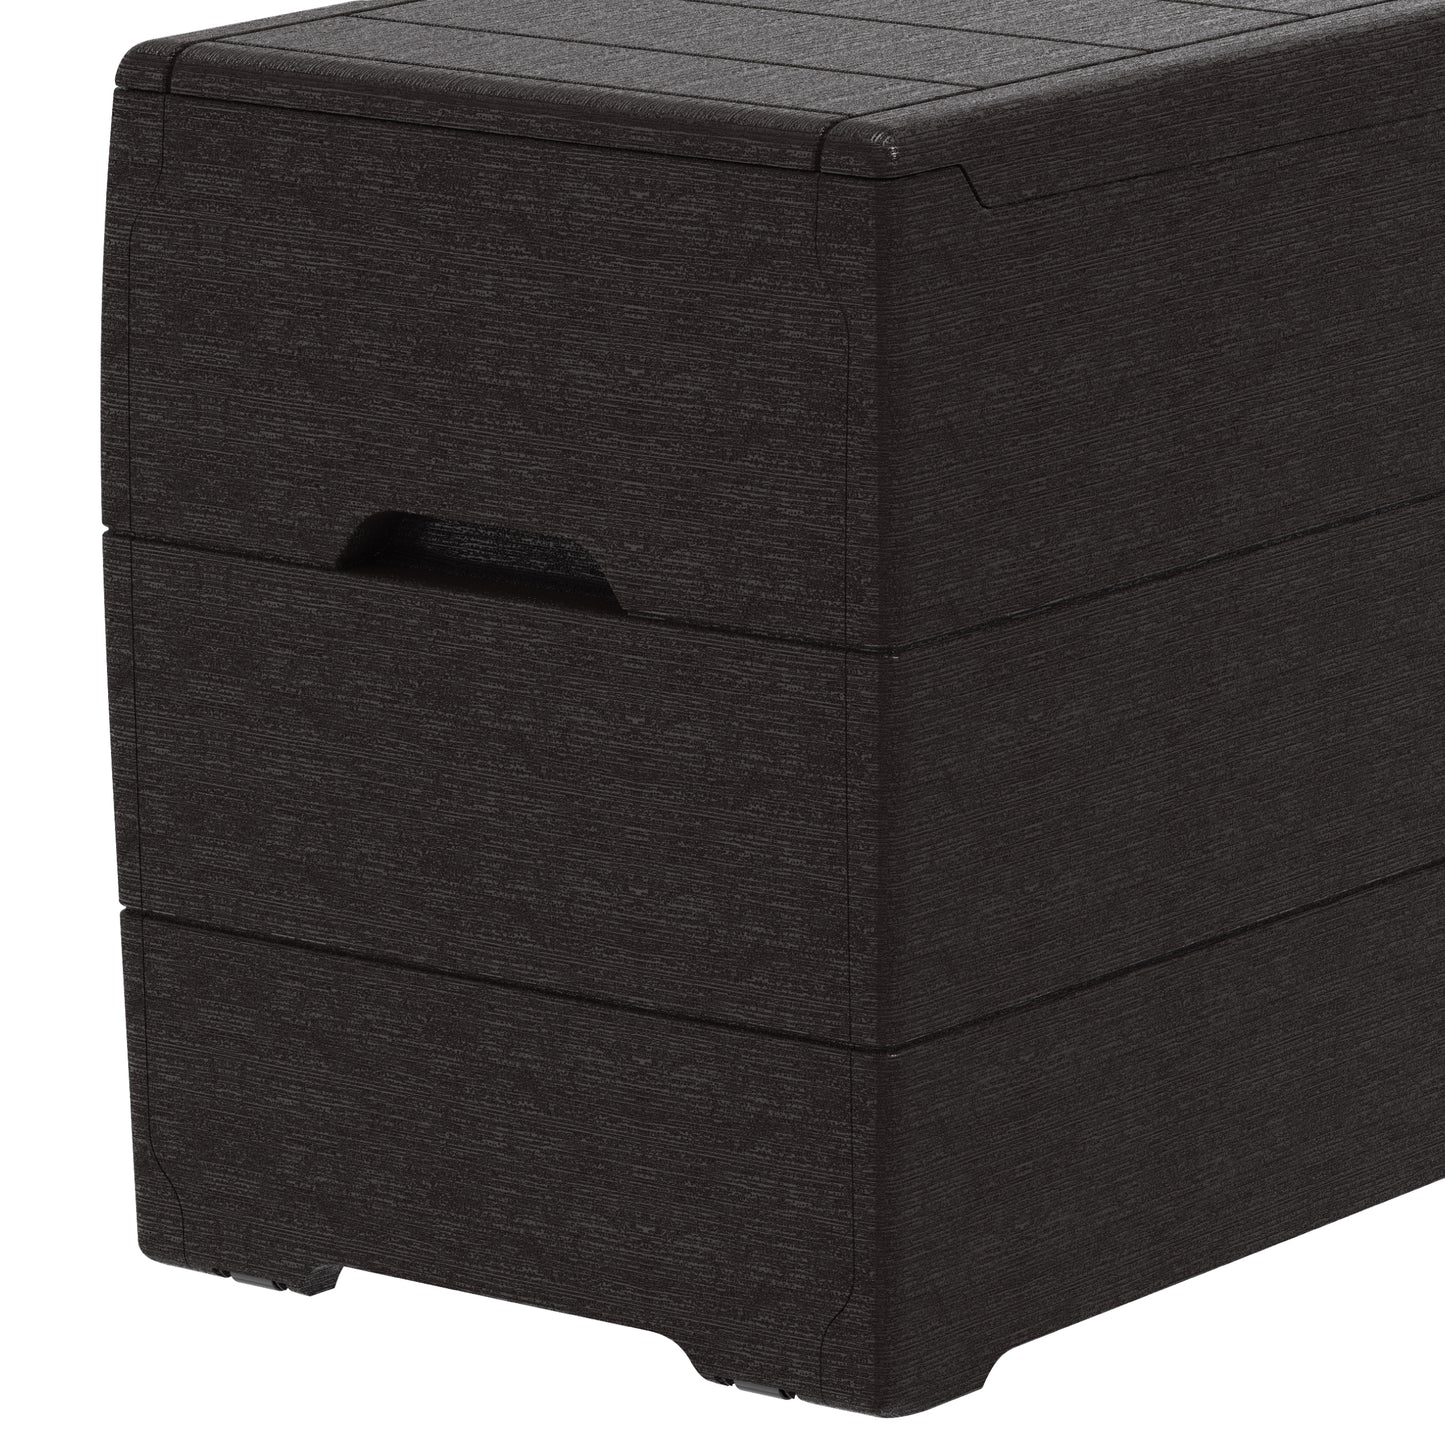 Duramax 71 Gallon Outdoor Resin Deck Box, Garden Furniture Organizer